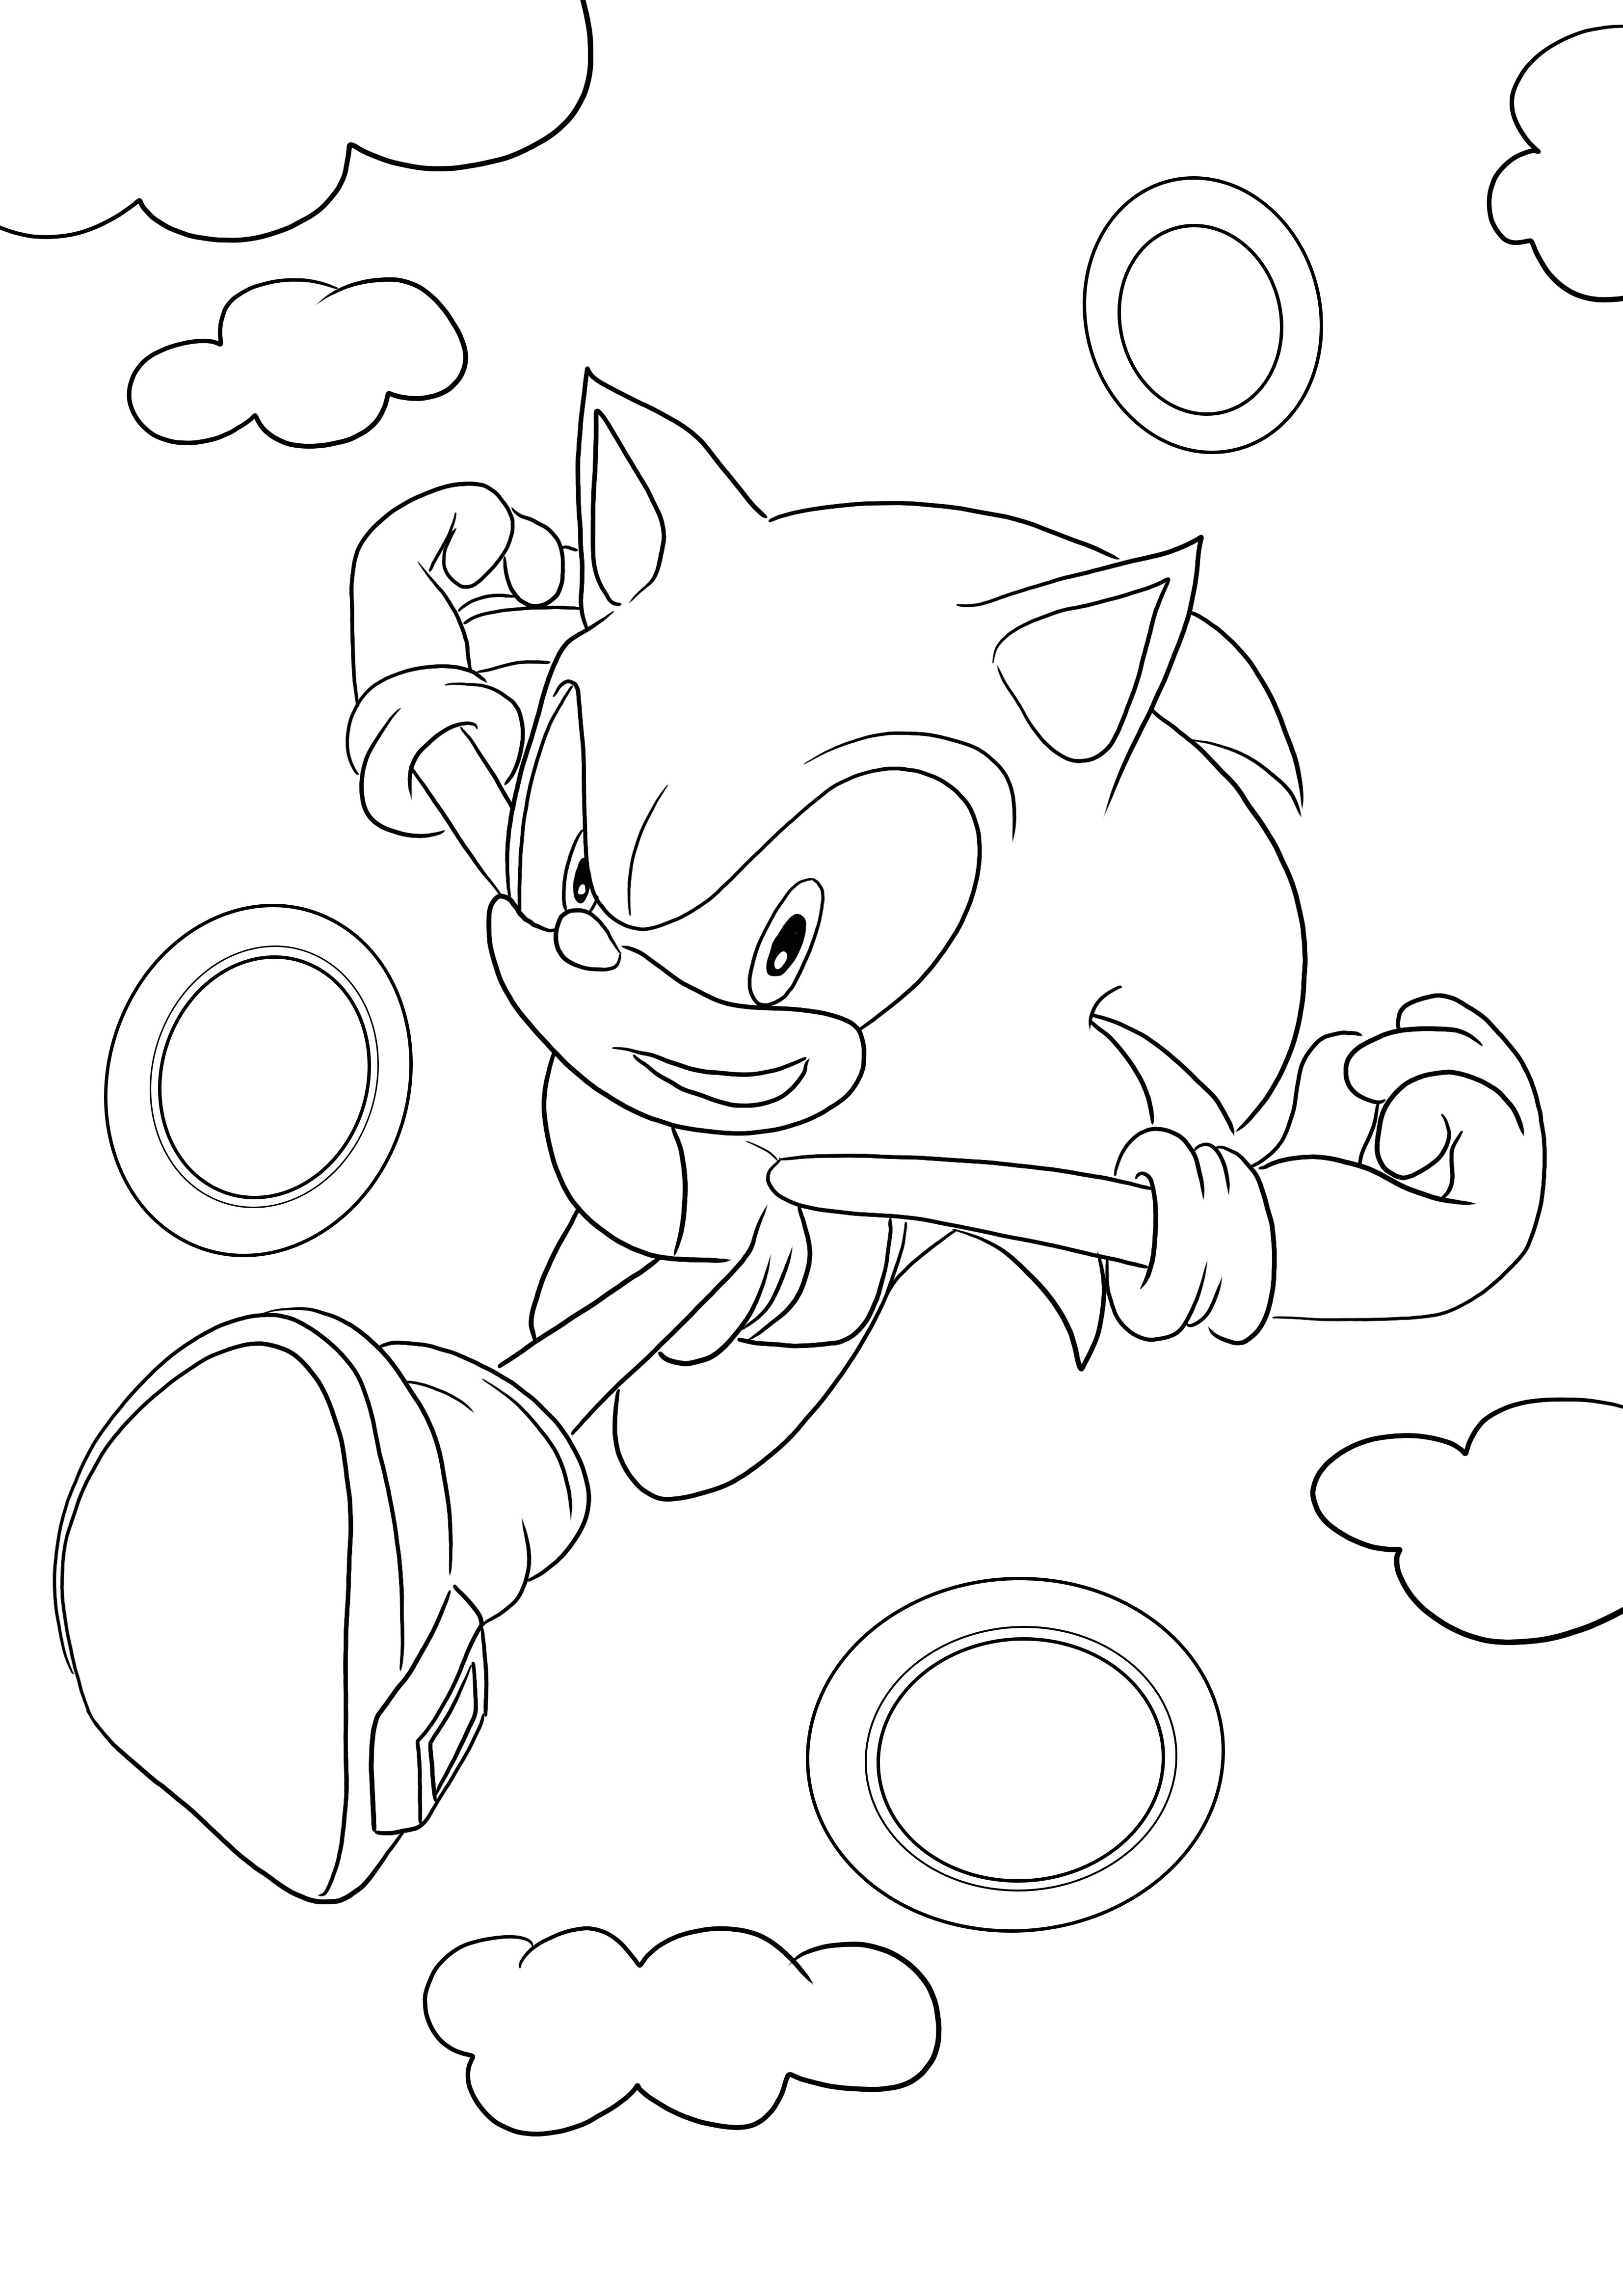 Pengunduhan dan pewarnaan gratis Sonic berjalan melalui cincin